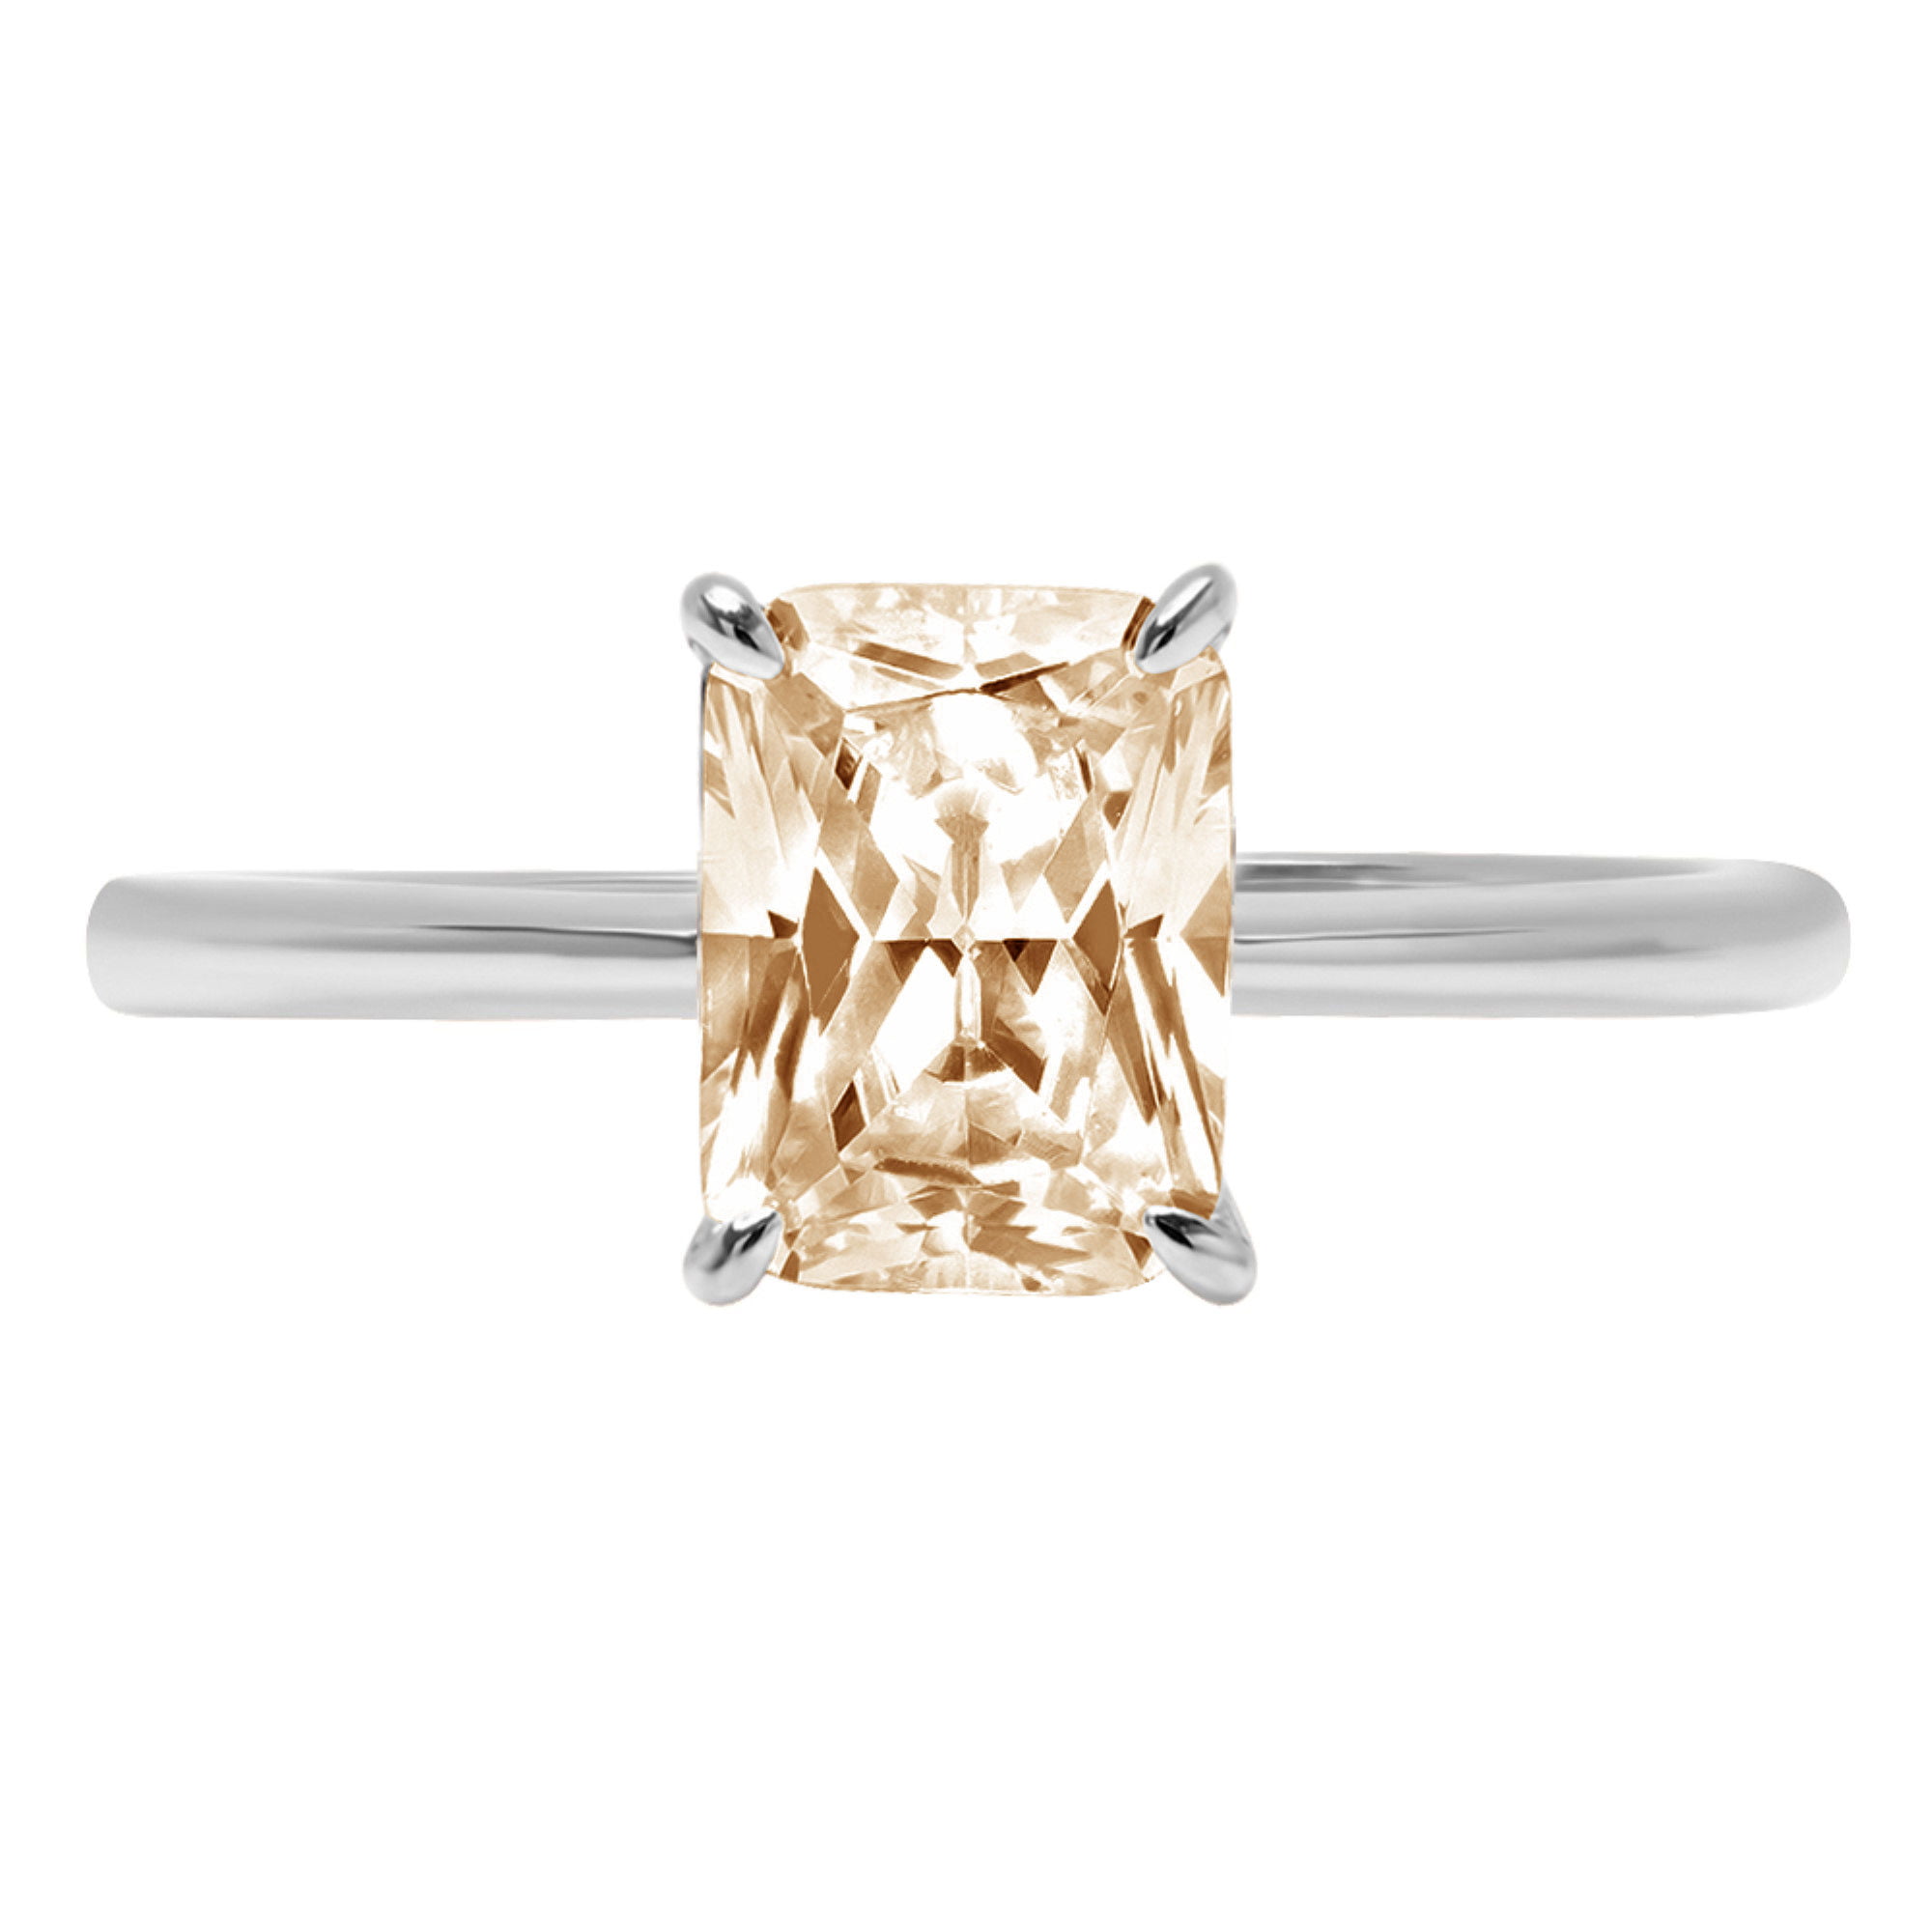 5CT Diamond Halo Wedding Engagement Ring 14k White Gold Finish Radiant Round Cut